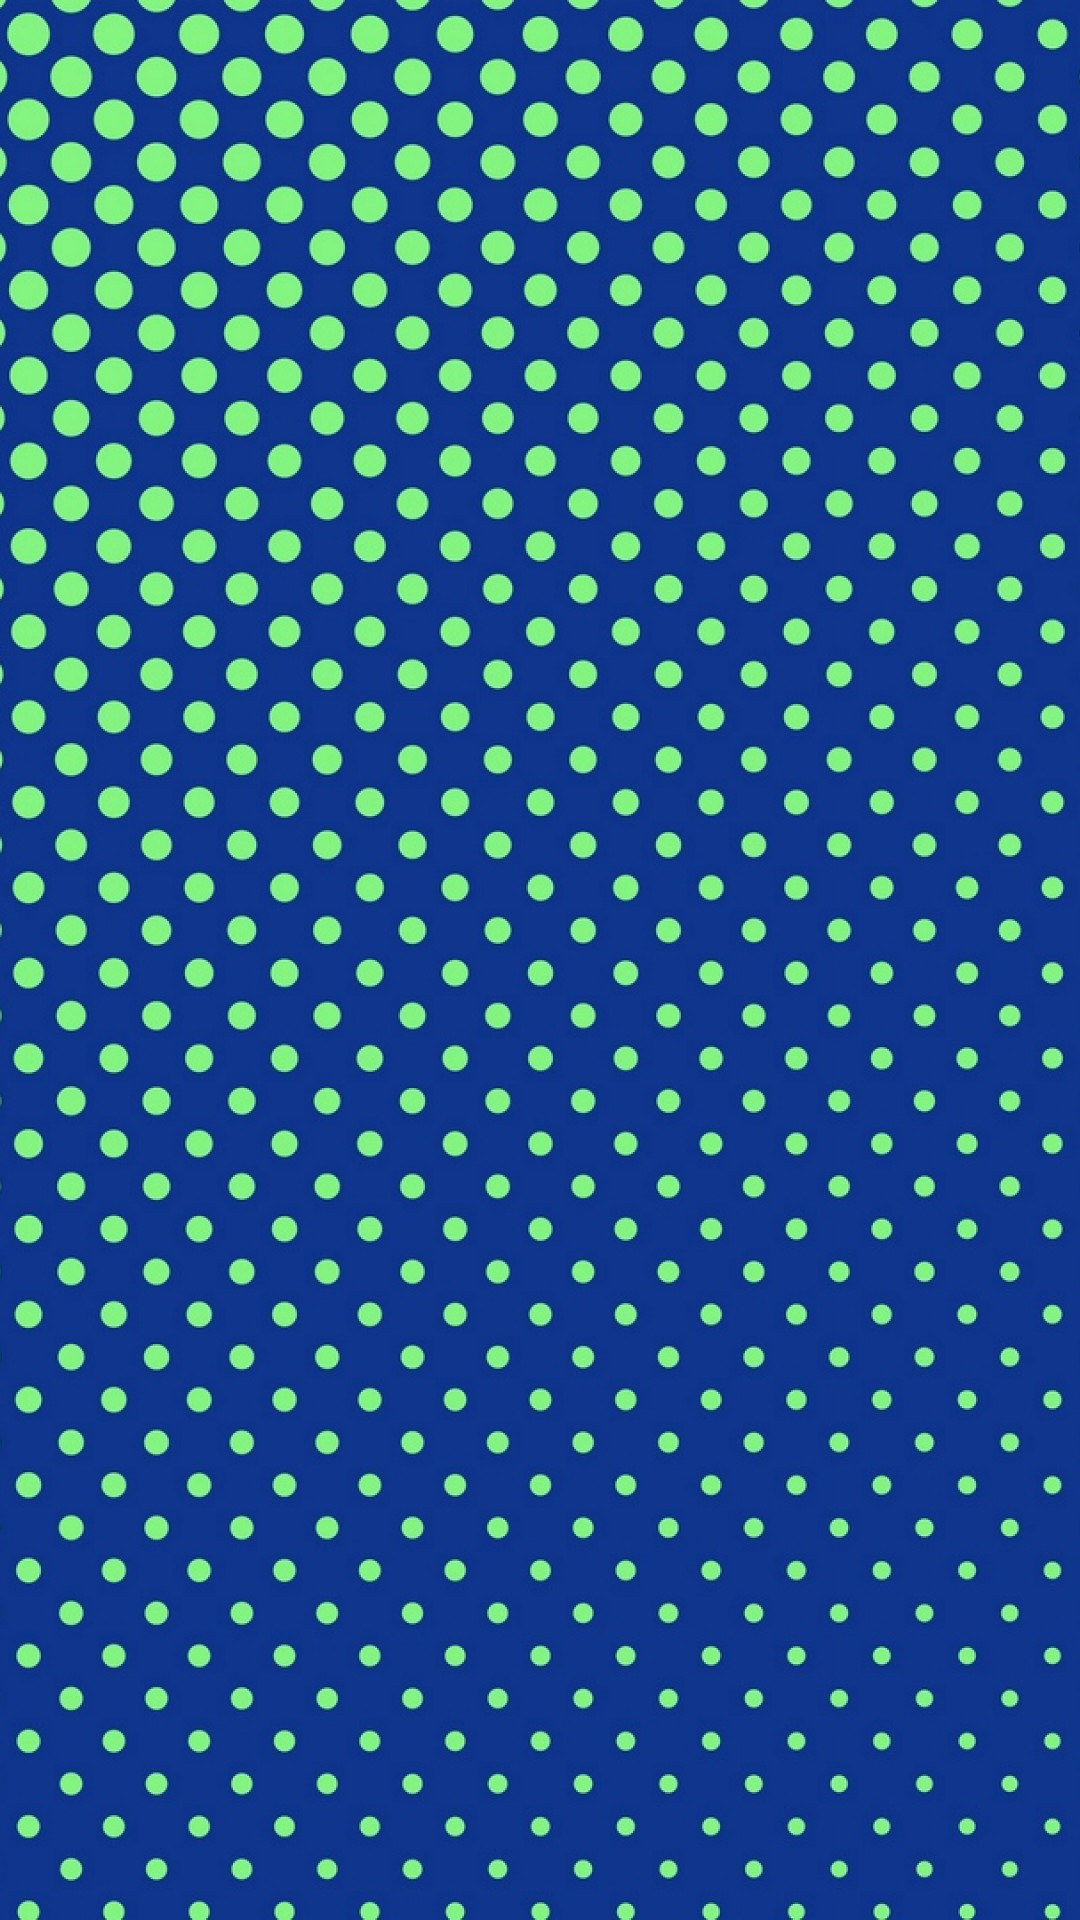 Blue points HD Wallpaper